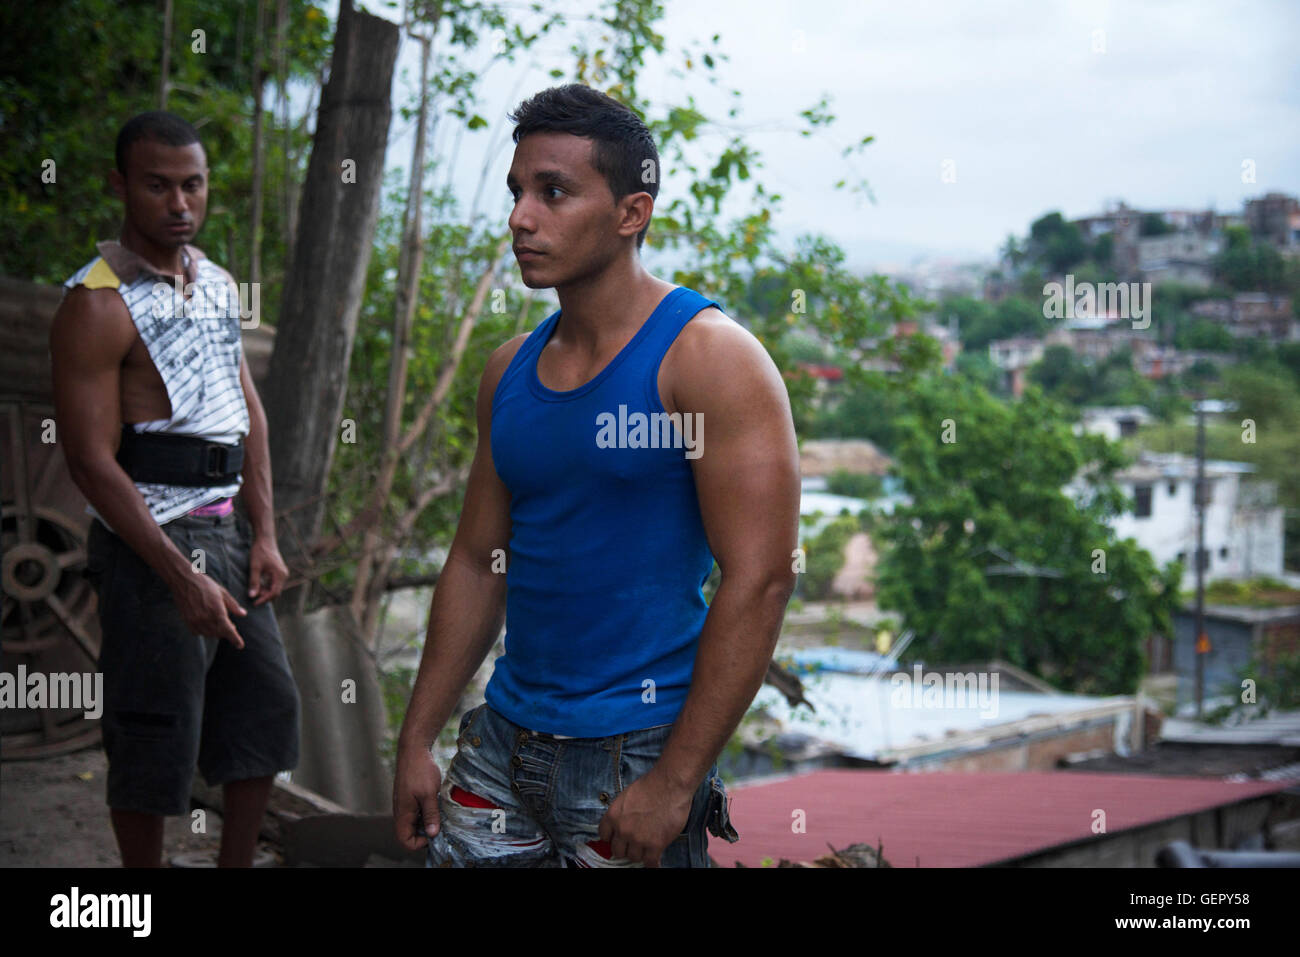 Young men in an outdoors gym - Santiago - Cuba Stock Photo